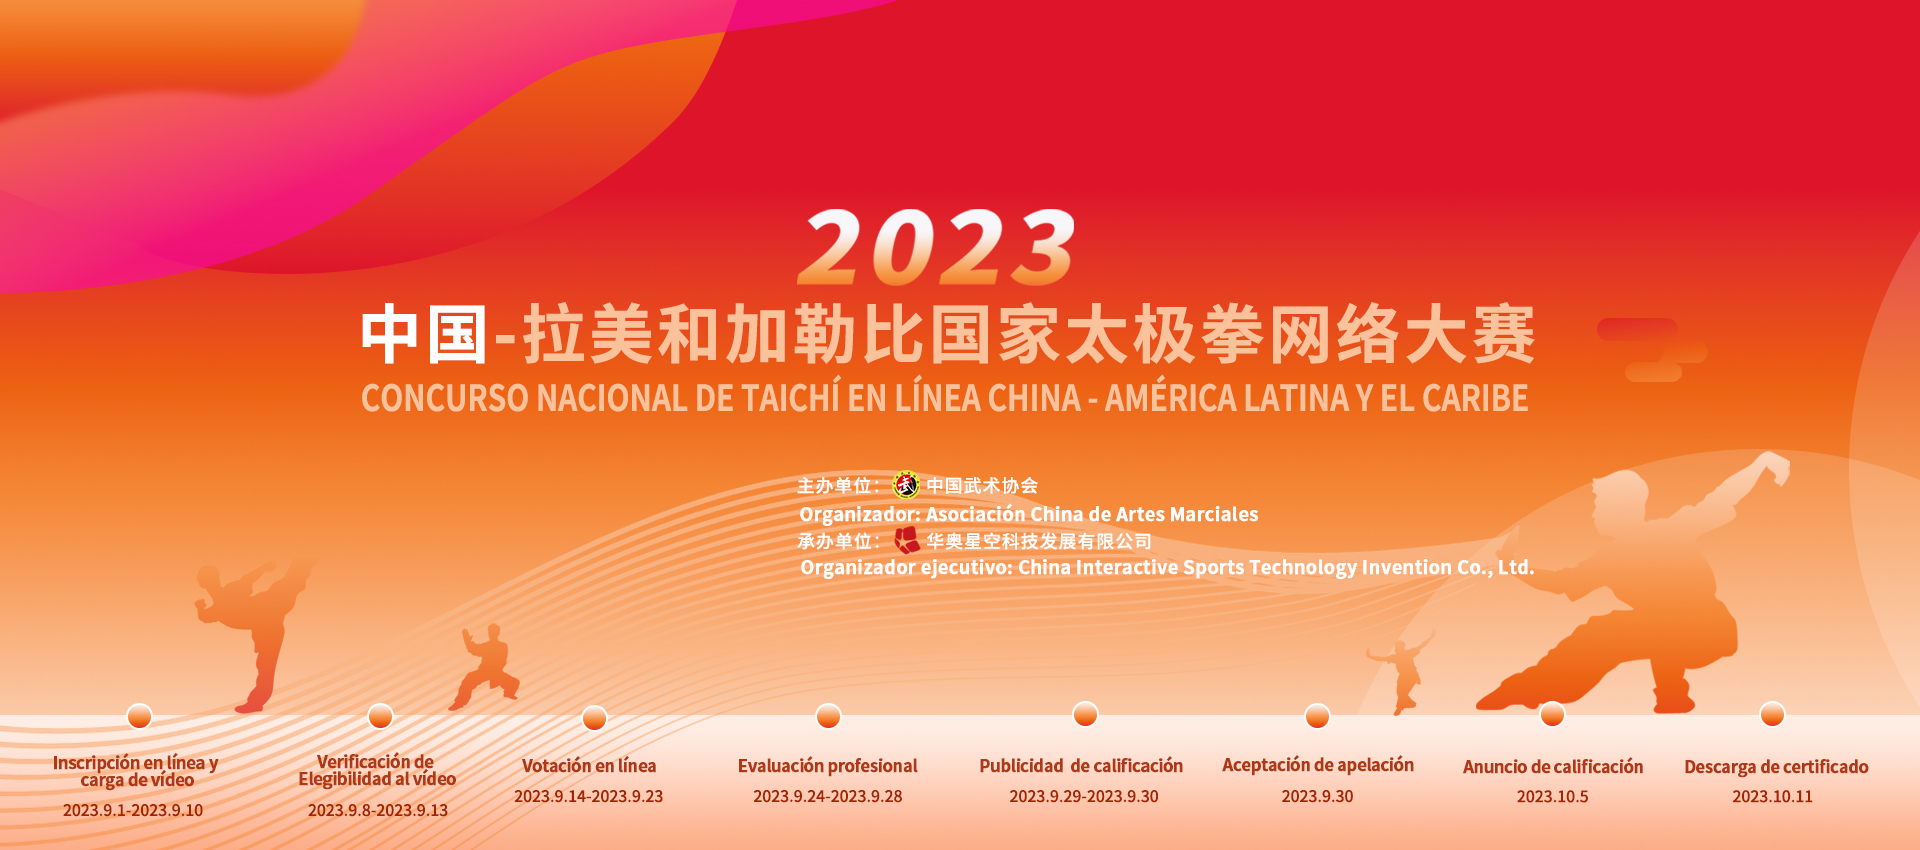 Concurso Nacional de Taichí en línea China - América Latina y el Caribe